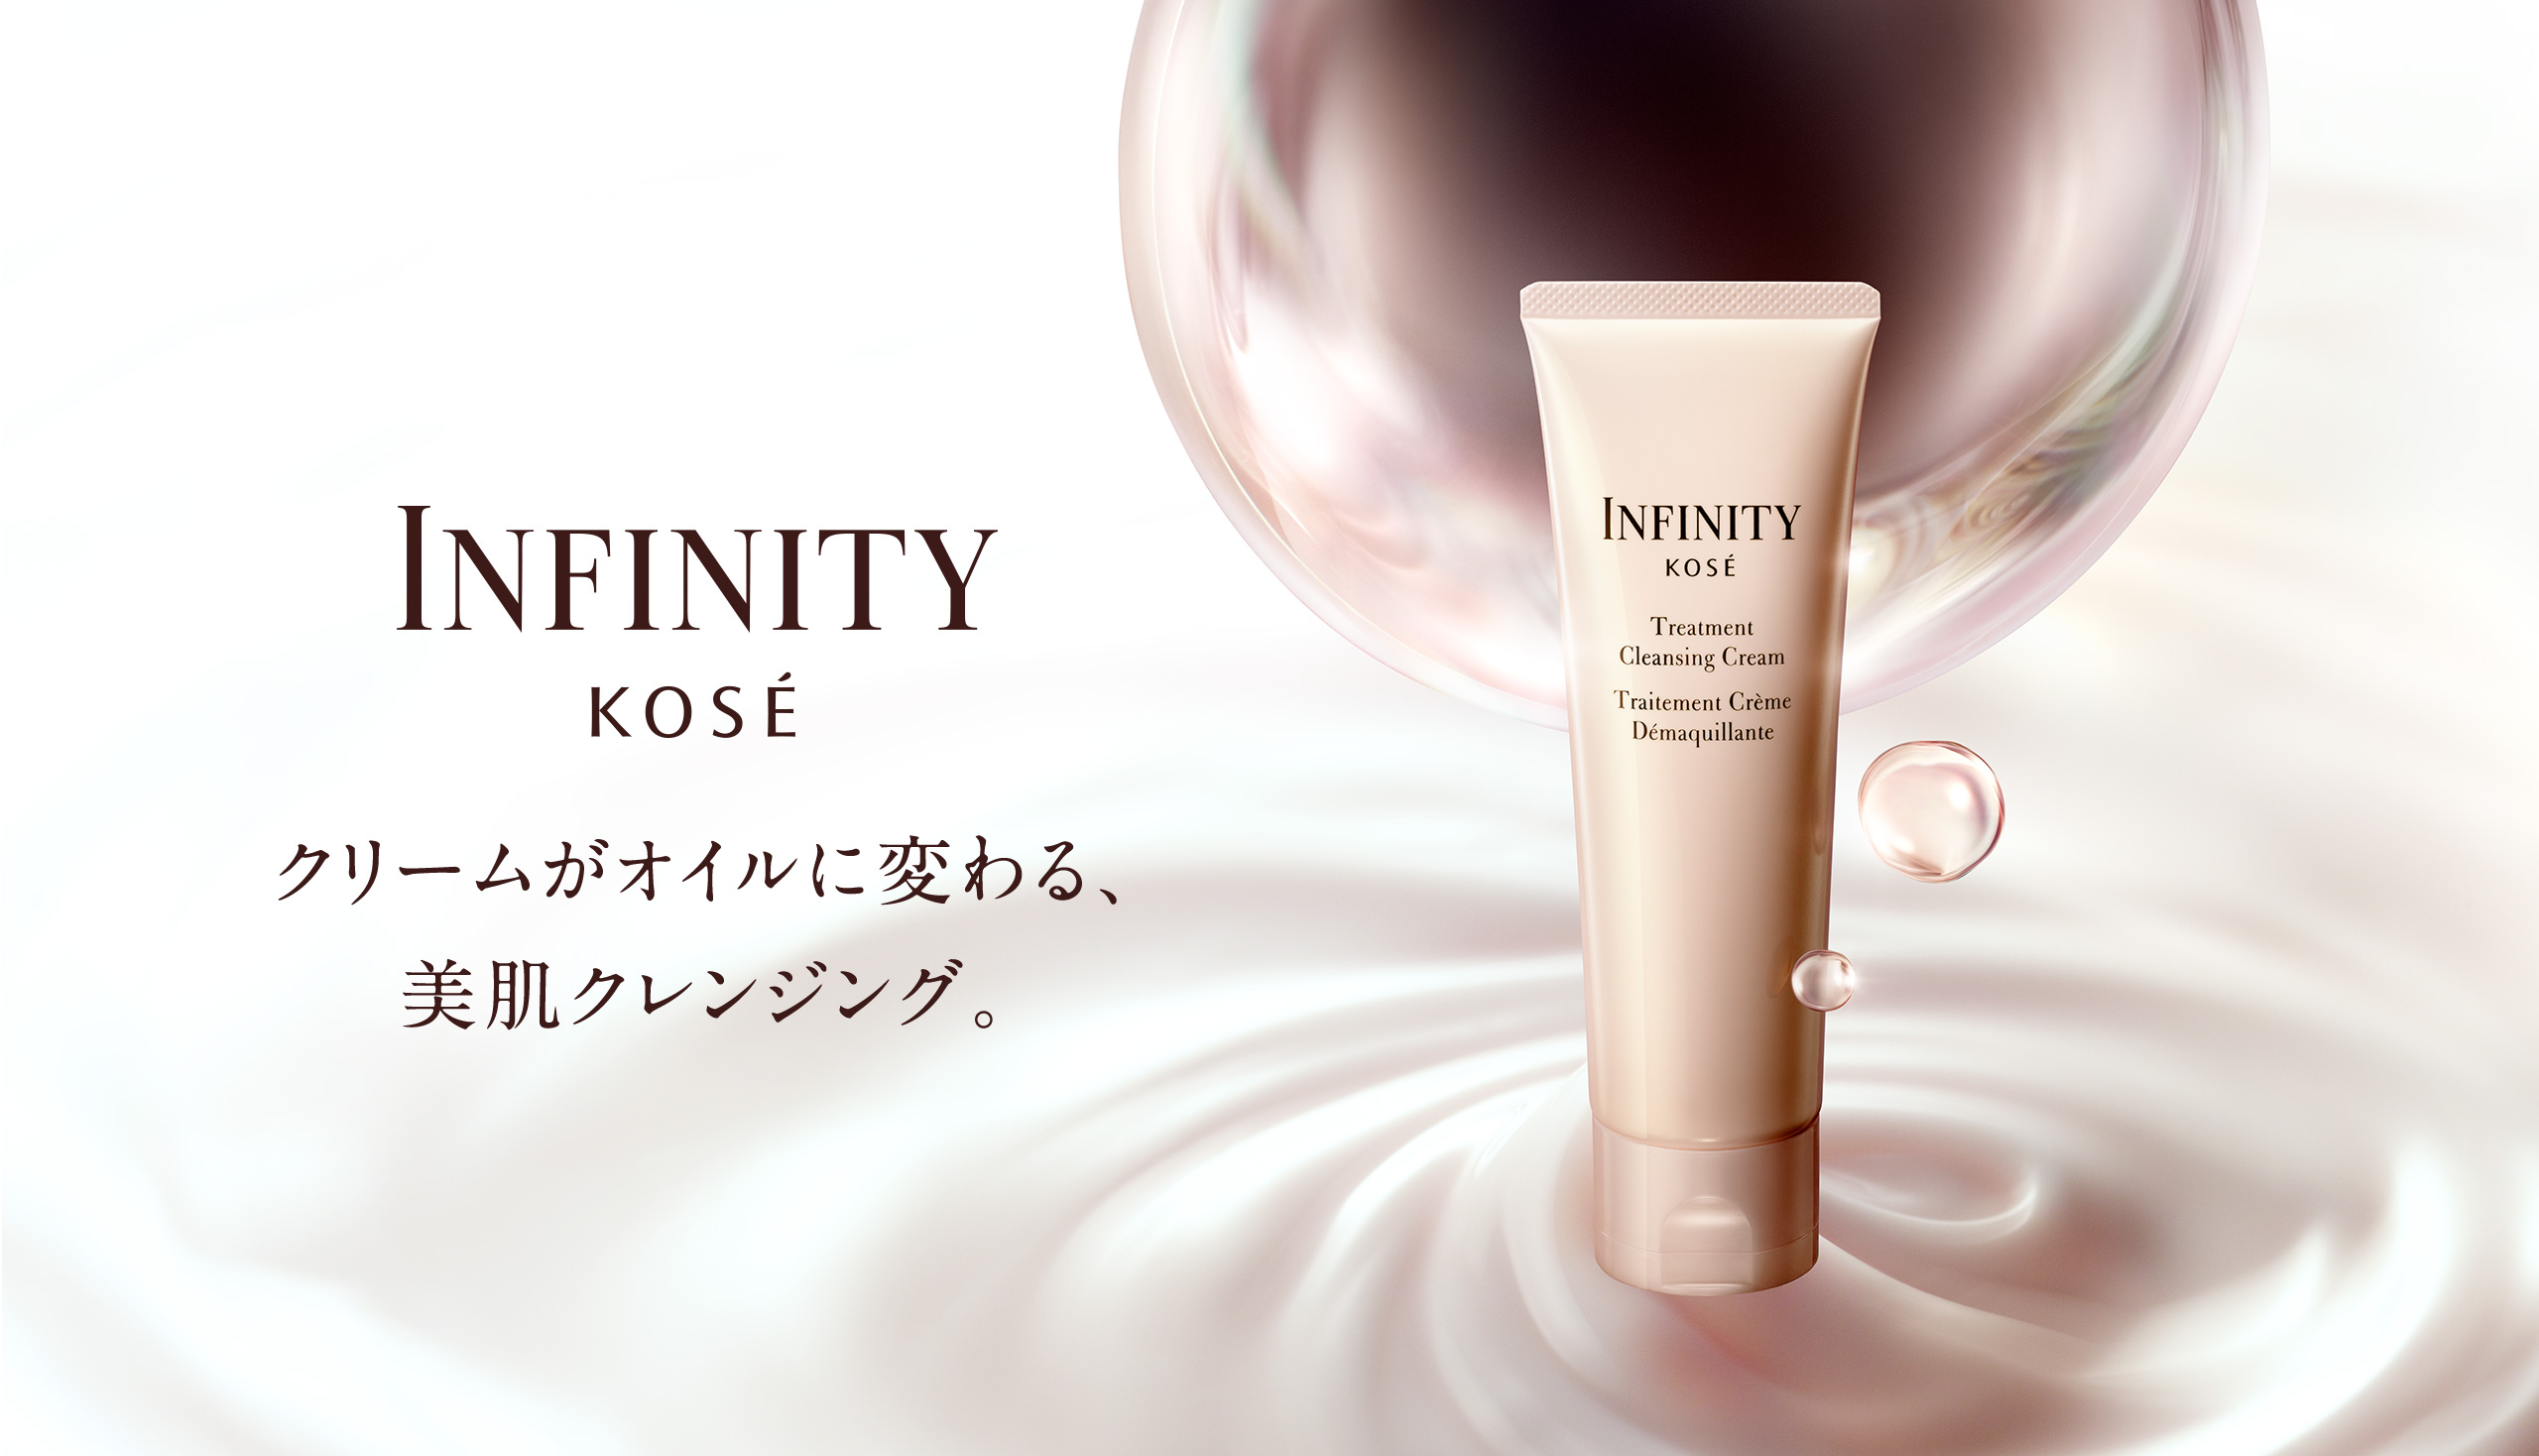 破格】KOSE infinity(未使用品) 化粧品+spbgp44.ru